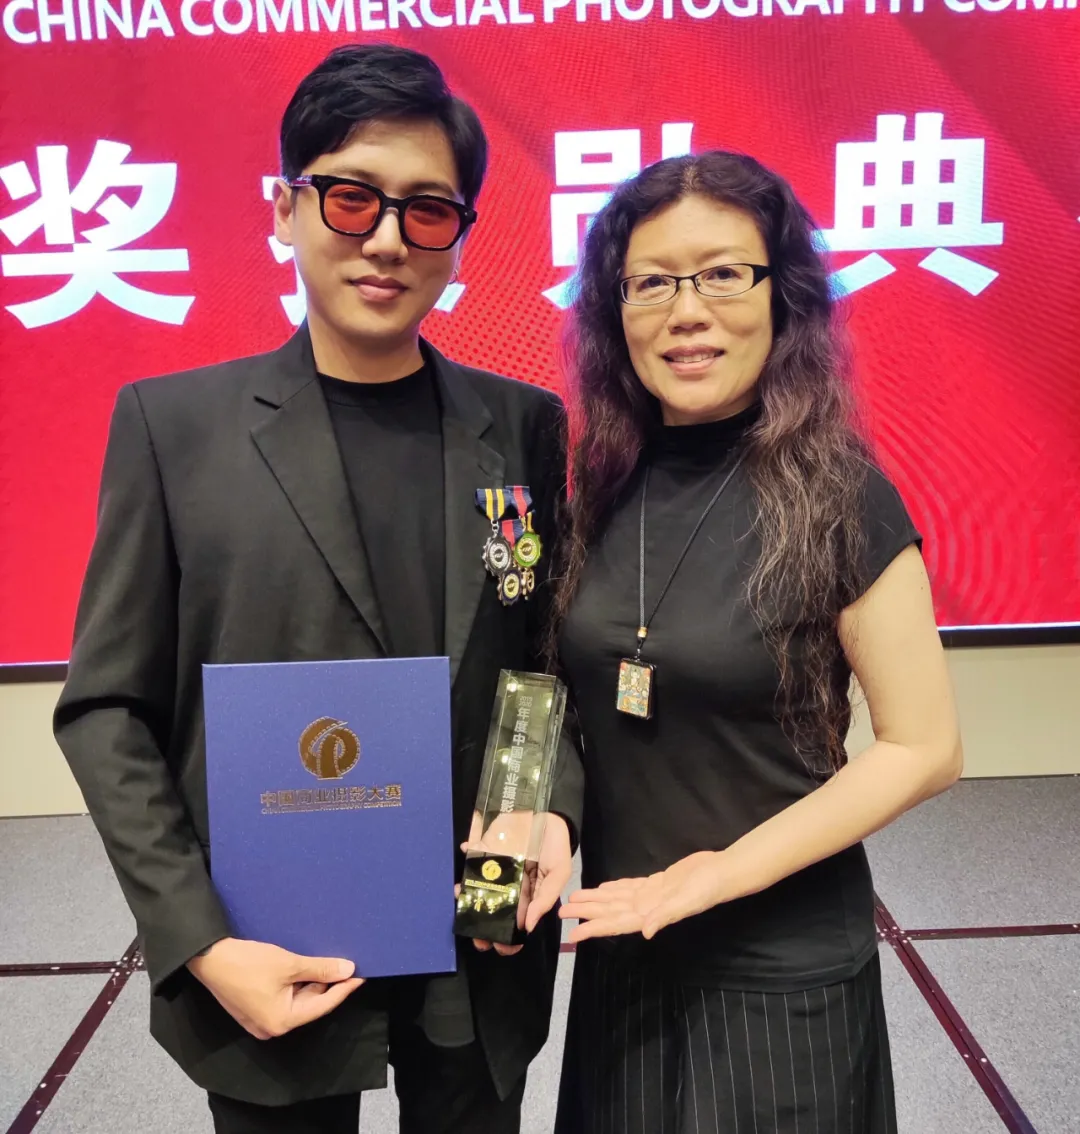 黑光教育摄影化妆培训学校肖宇老师荣获CPA中国商业摄影大赛奖项